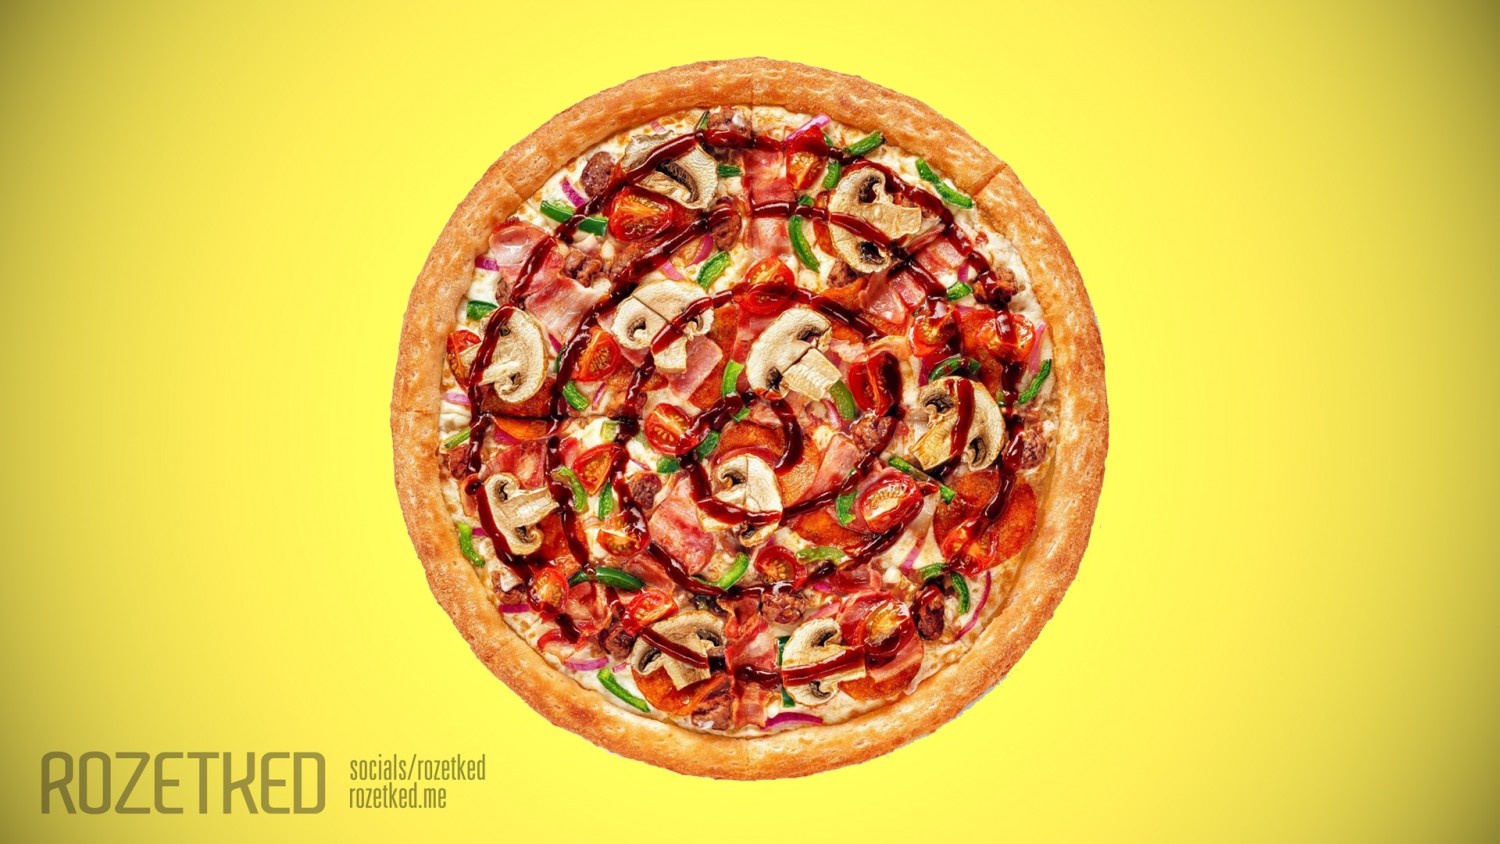 Инсайд: «Додо Пицца» выпустит пиццу к релизу Cyberpunk 2077